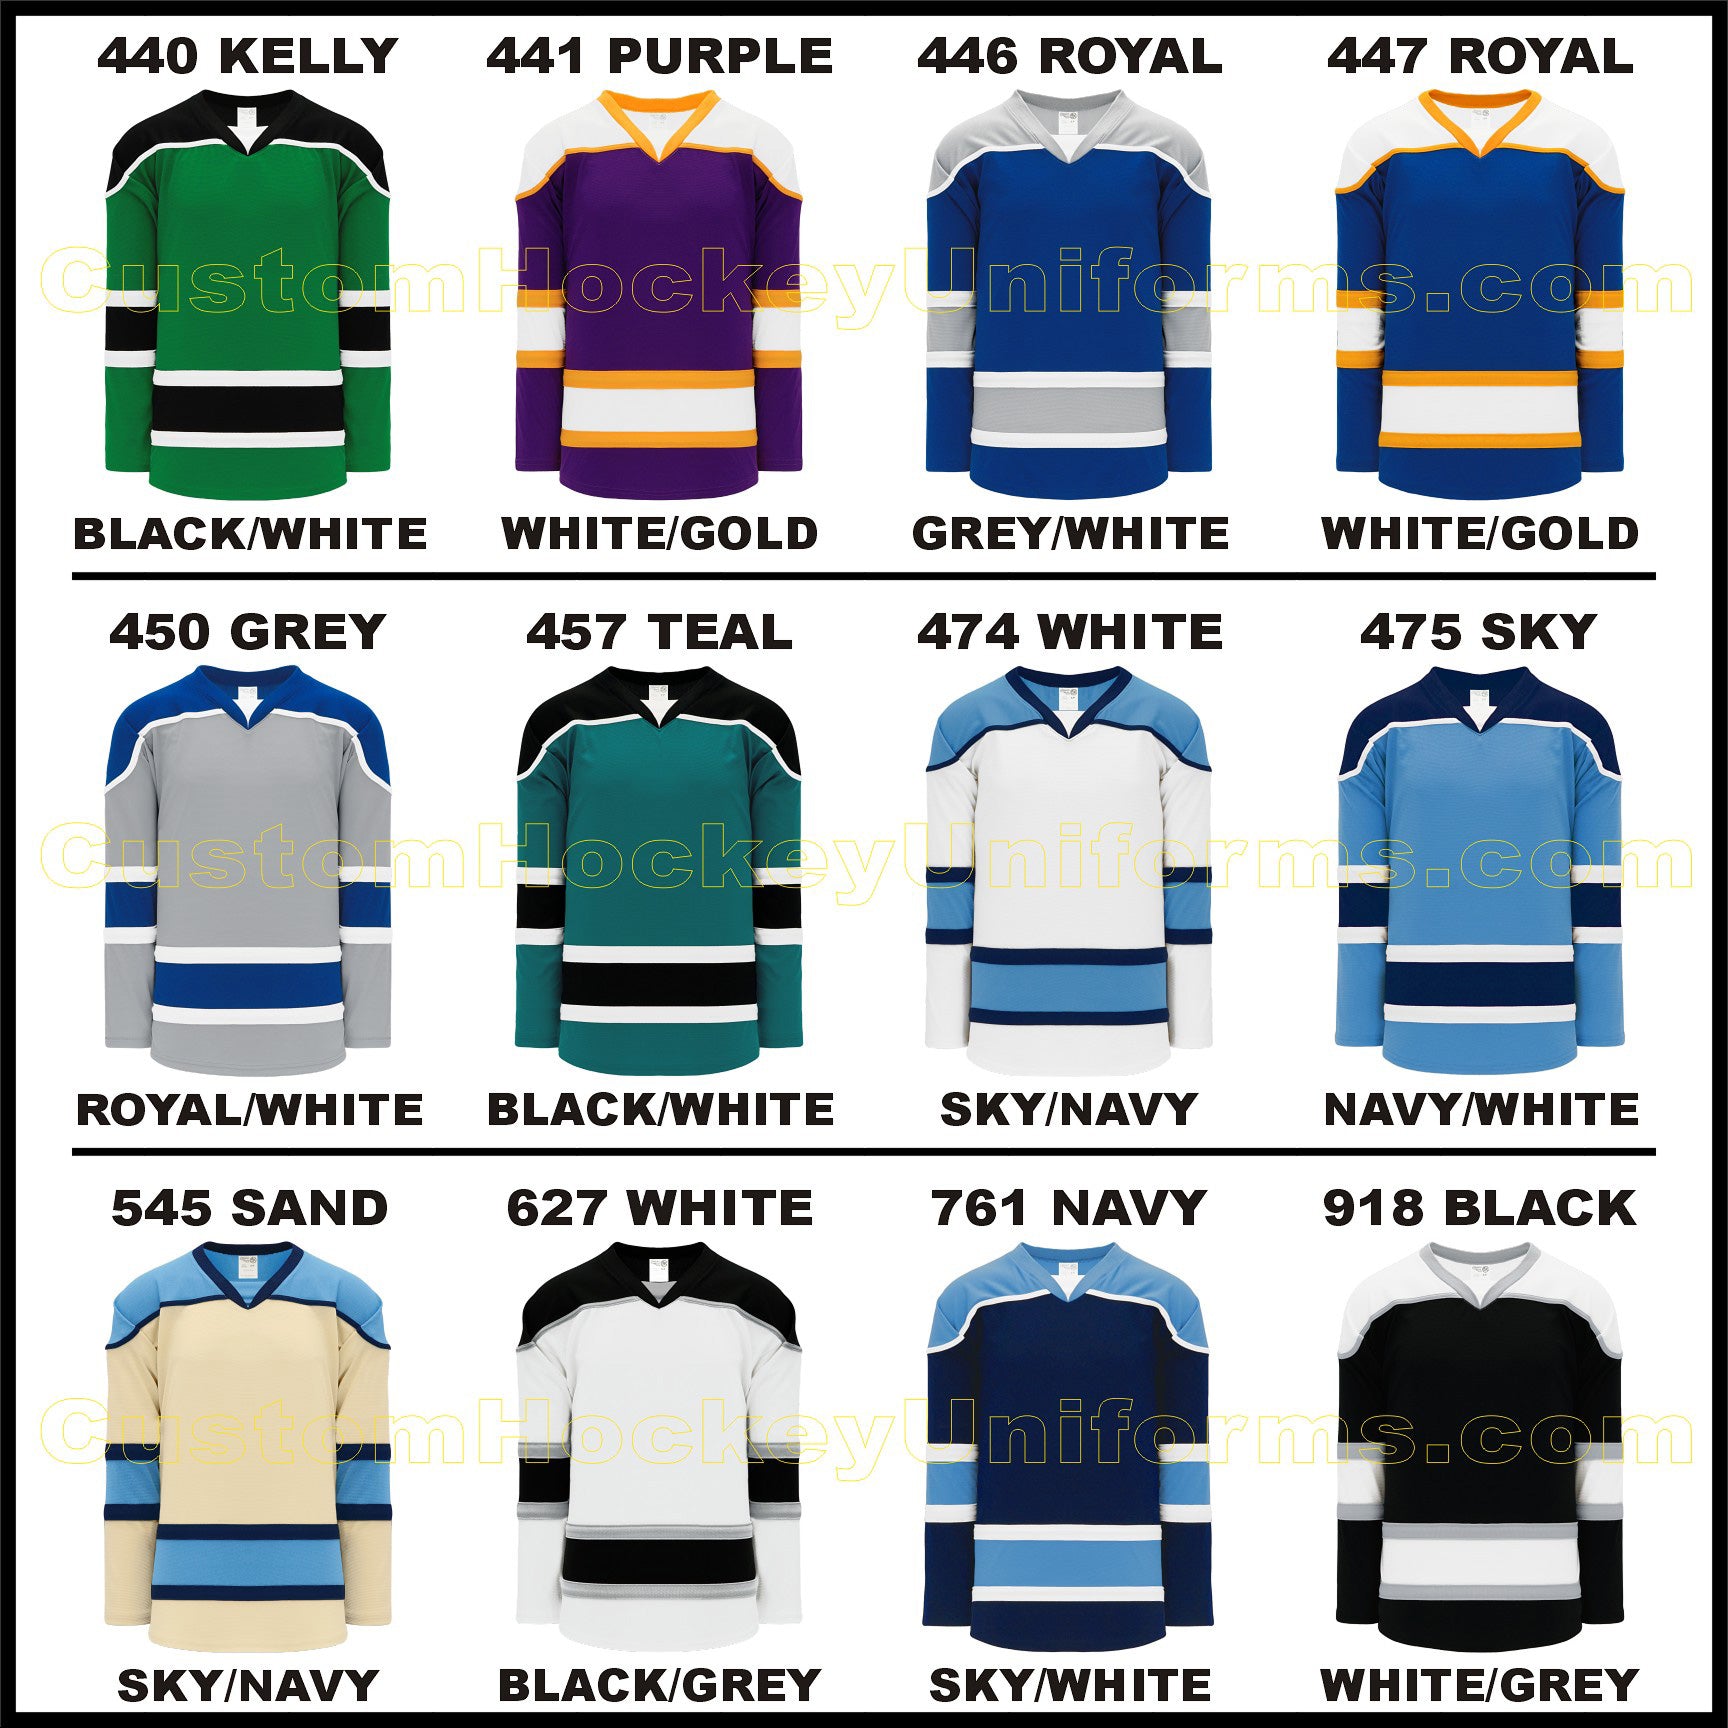 Men's League Sweaters  Custom hockey jerseys for teams